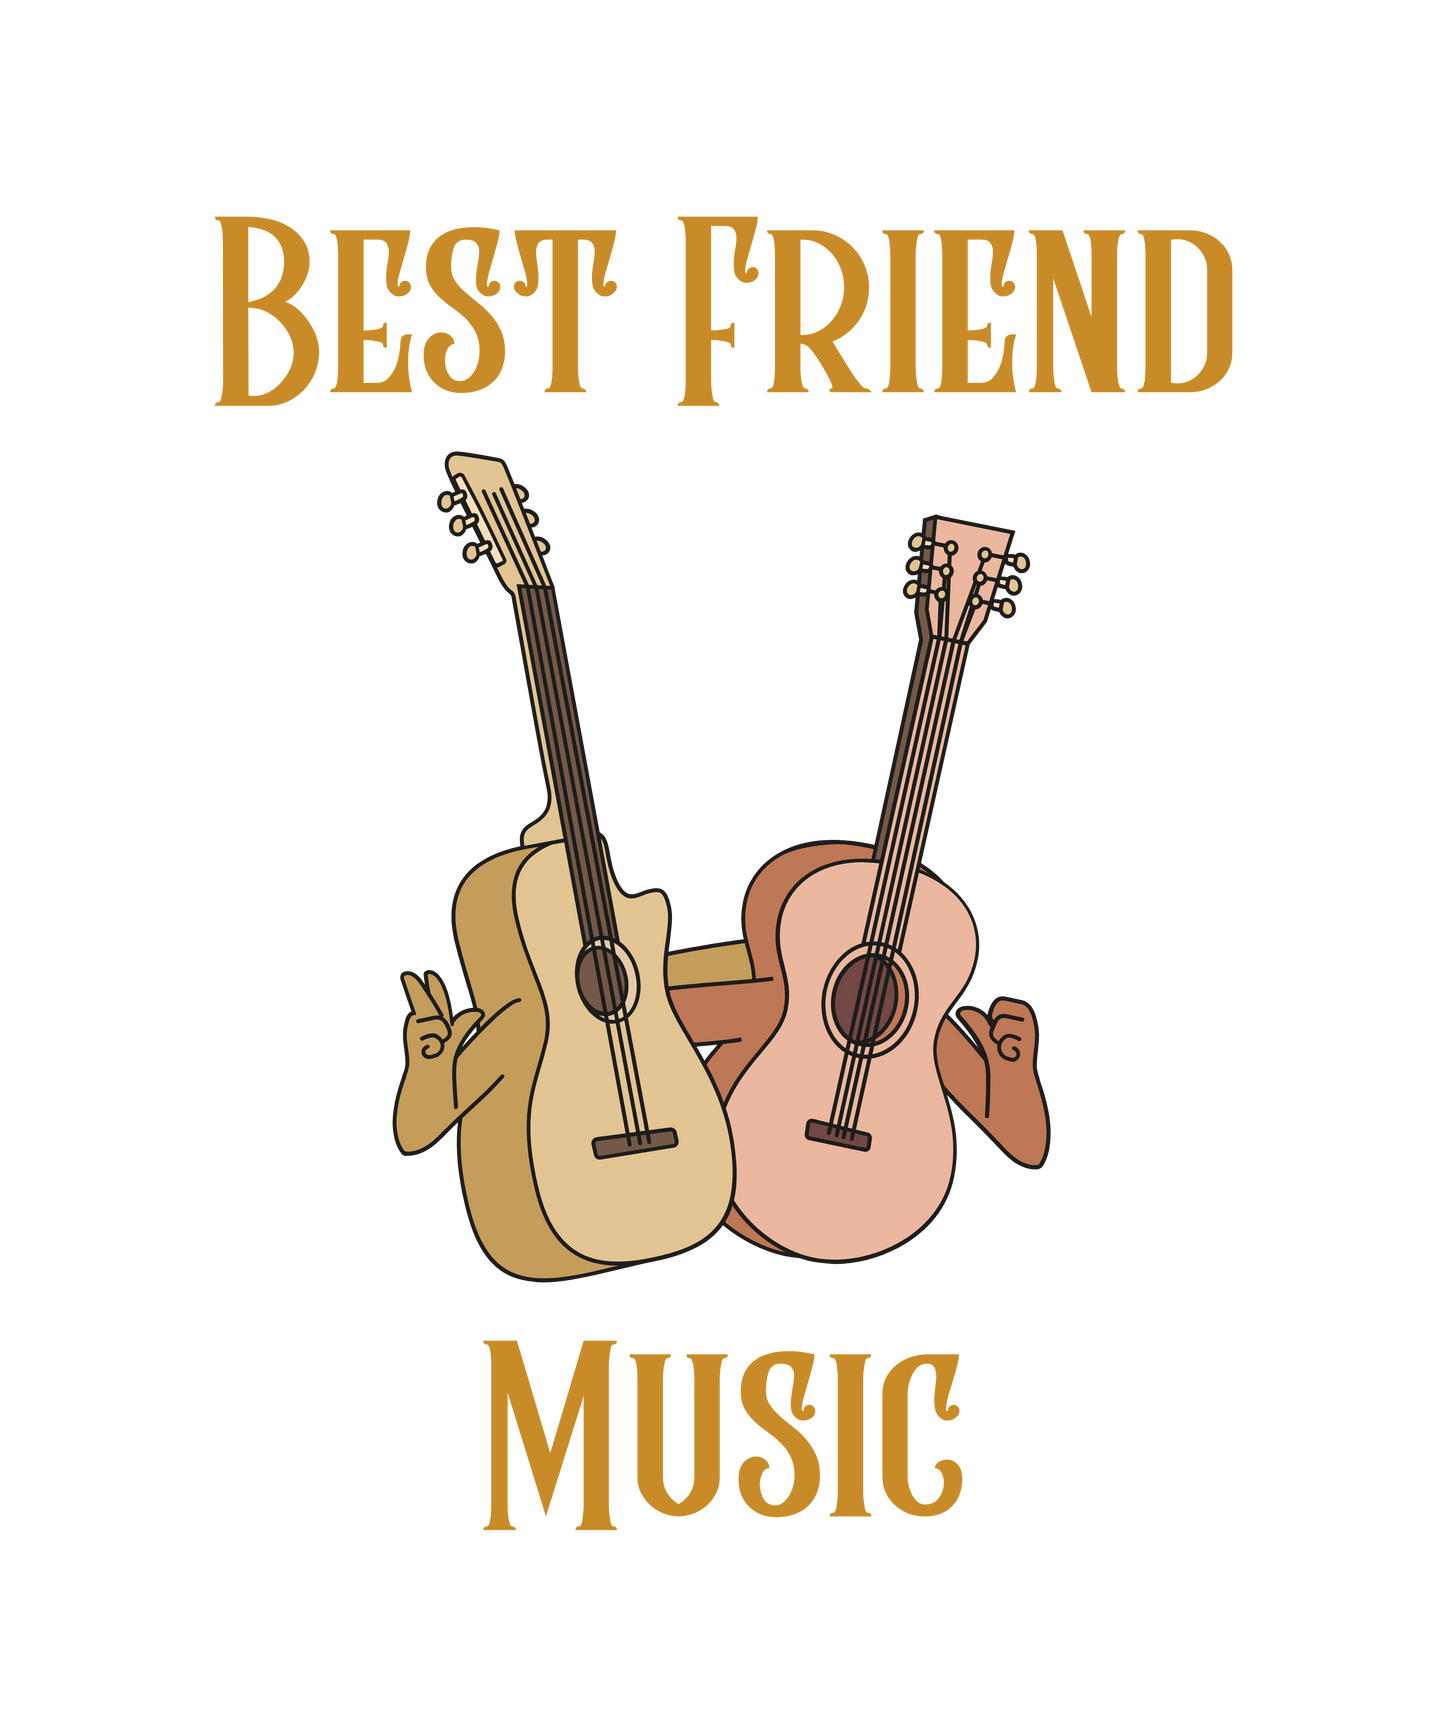 Best Friend Music T-Shirt